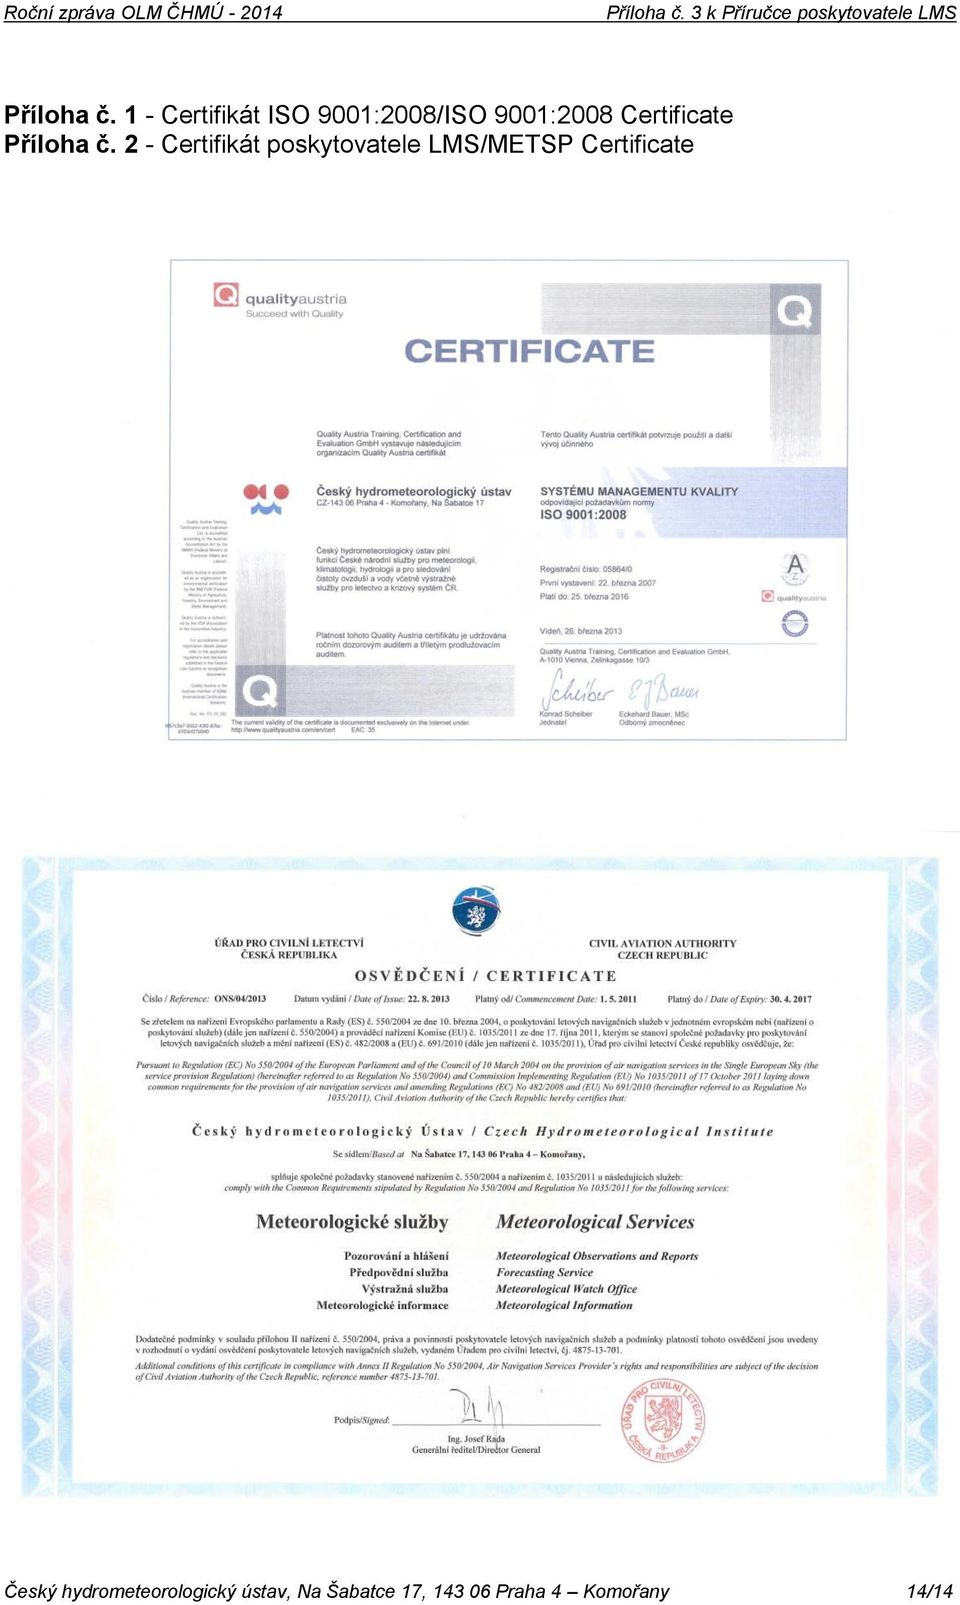 Certificate  2 - Certifikát poskytovatele LMS/METSP